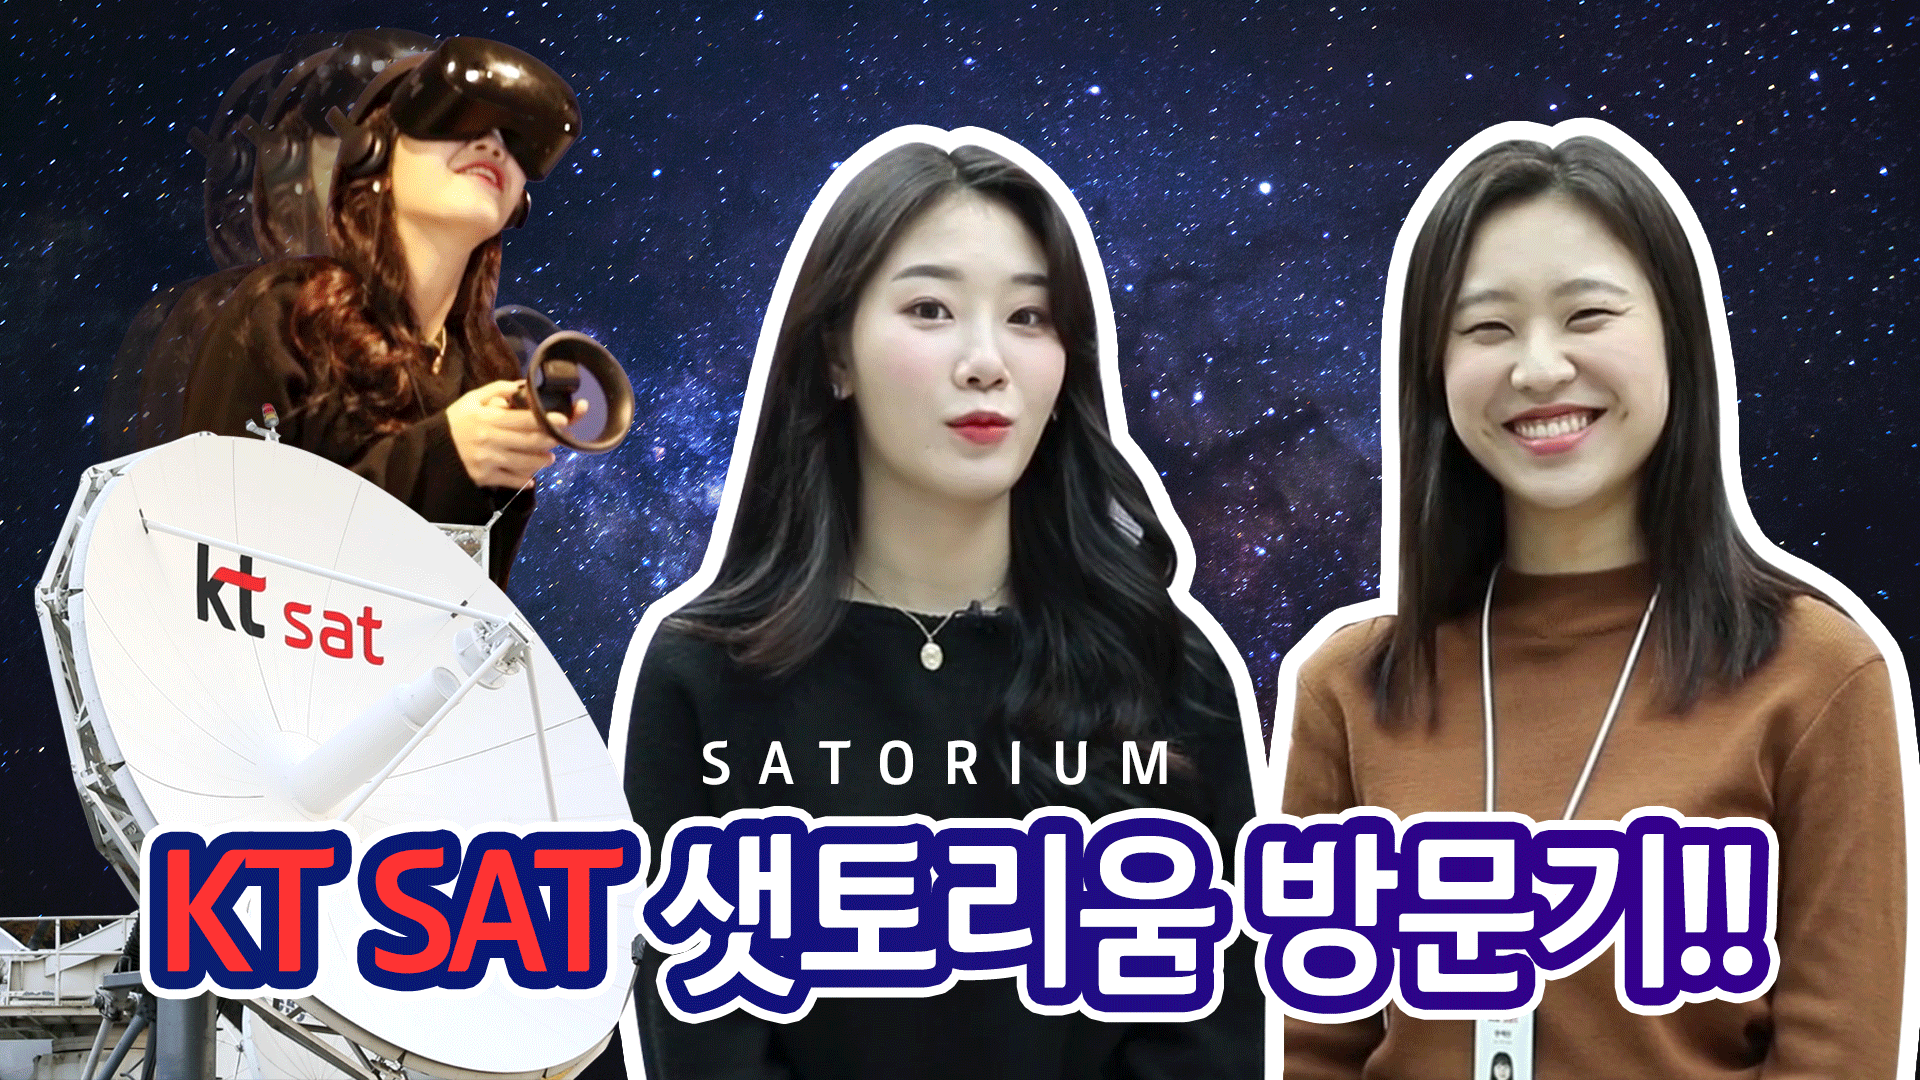 KT SAT 위성 전문홍보관 '샛토리움' 방문기